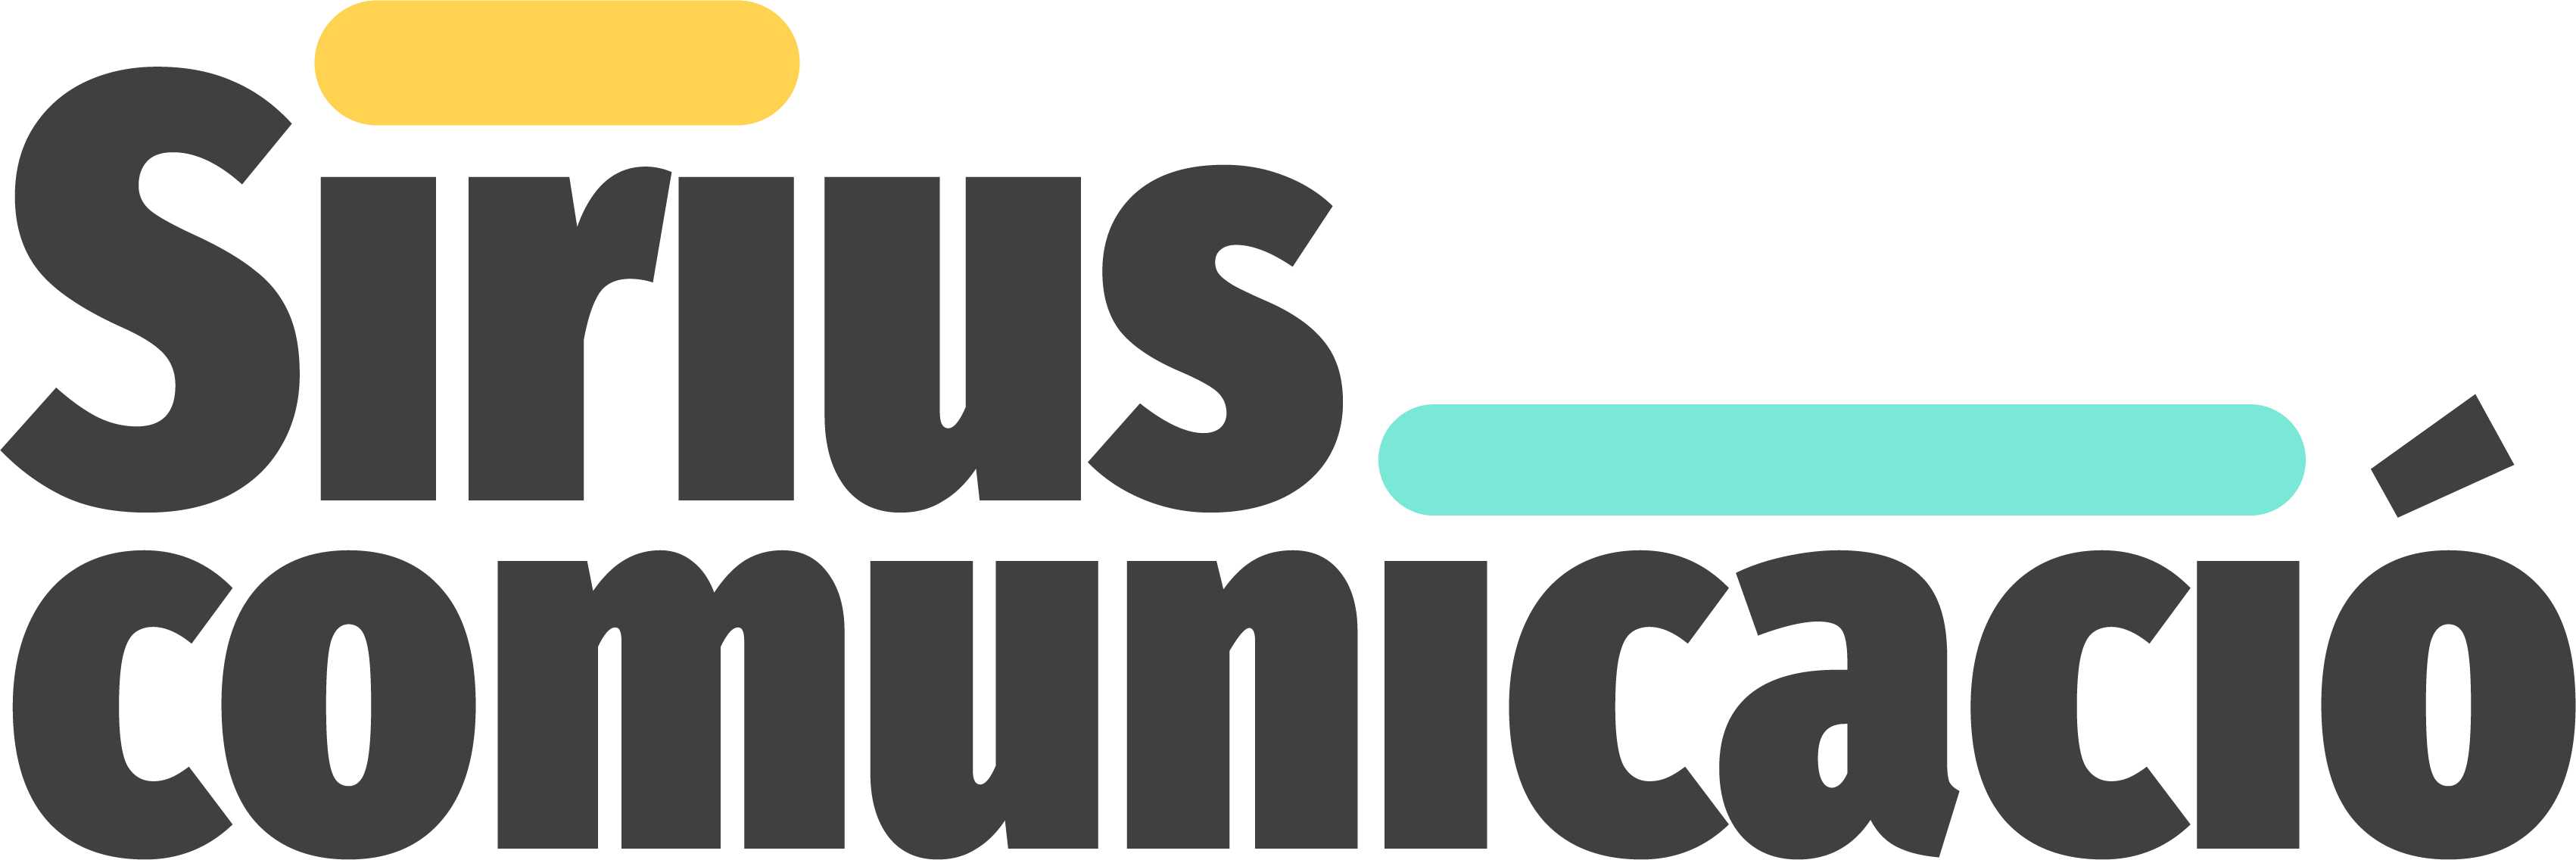 Logotip Sirius Comunicacio